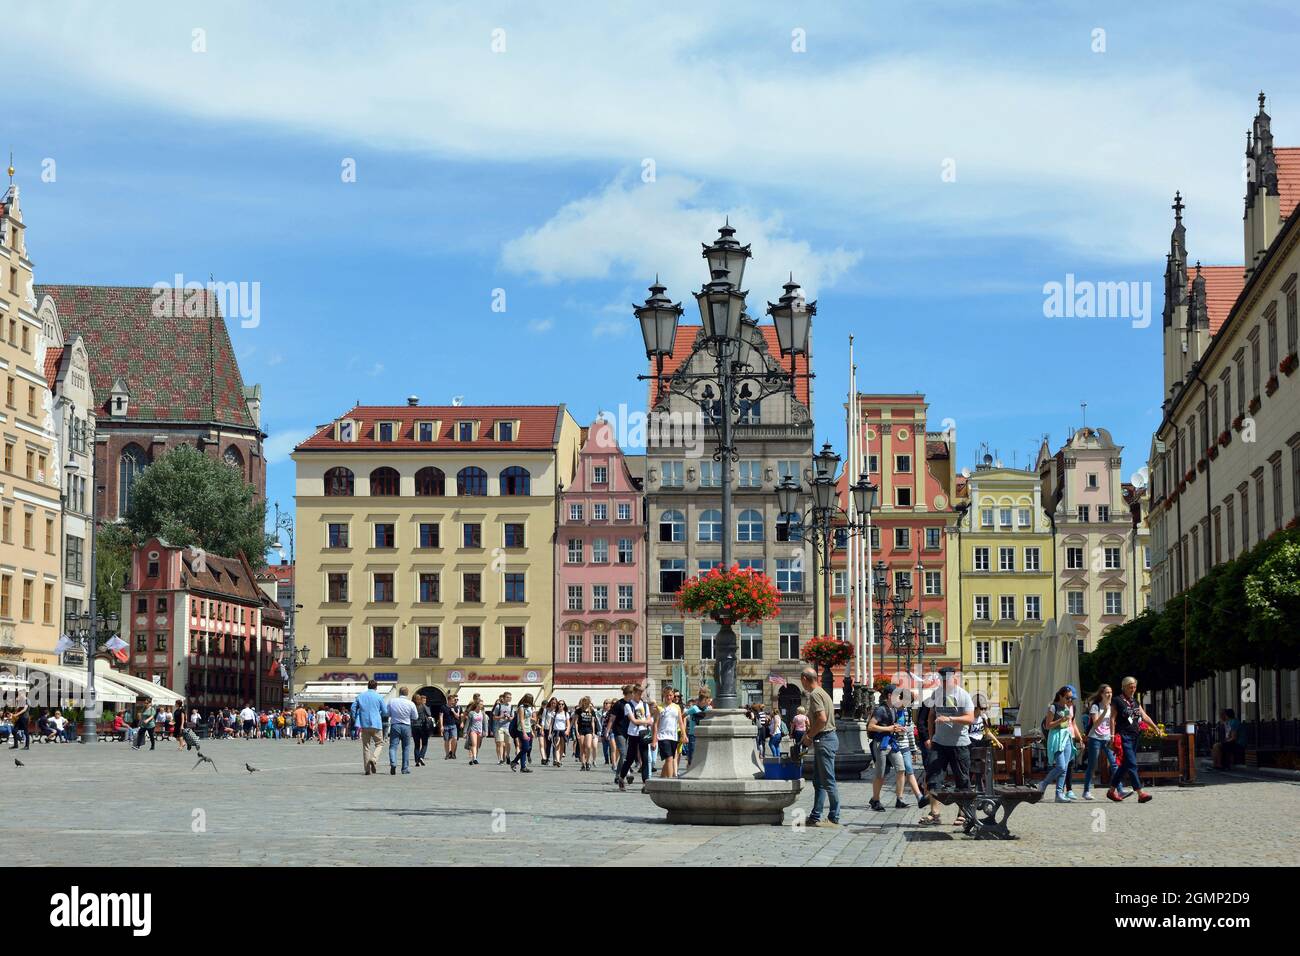 Plaza del Mercado en el histórico casco antiguo de Wroclaw - Polonia. Foto de stock